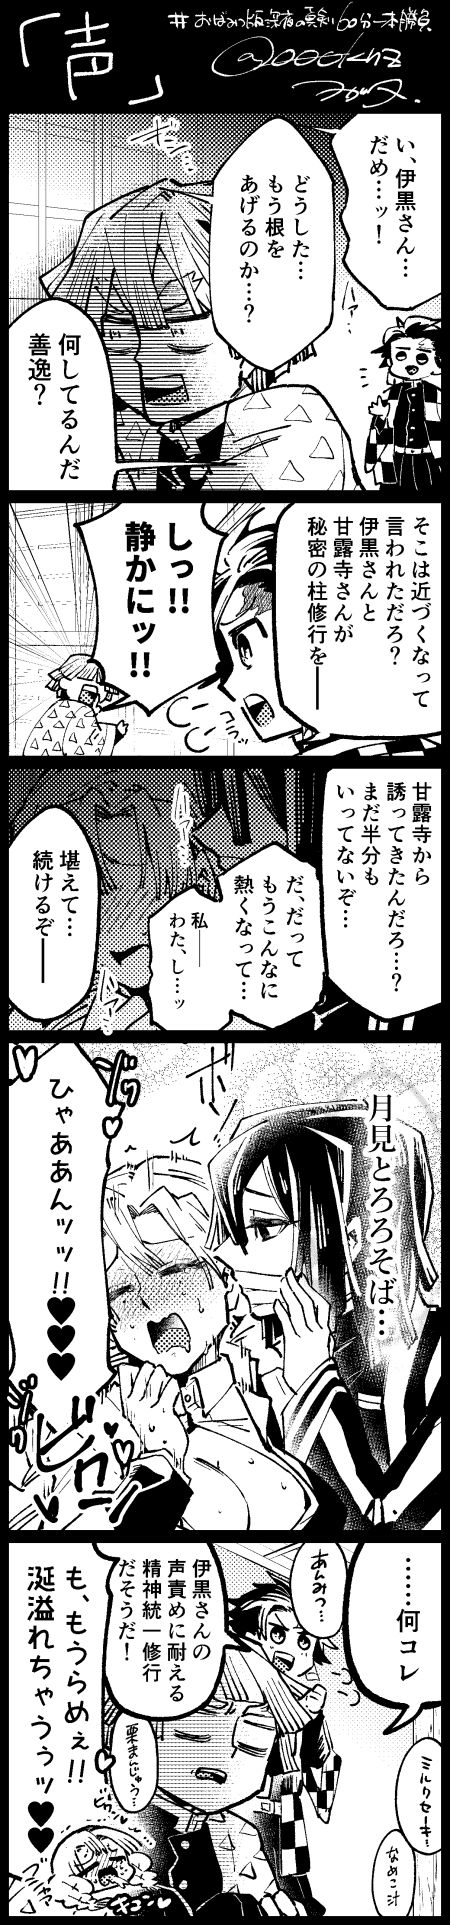 [Wogata] ObaMitsu Manga + E Rogu Sono 2 1